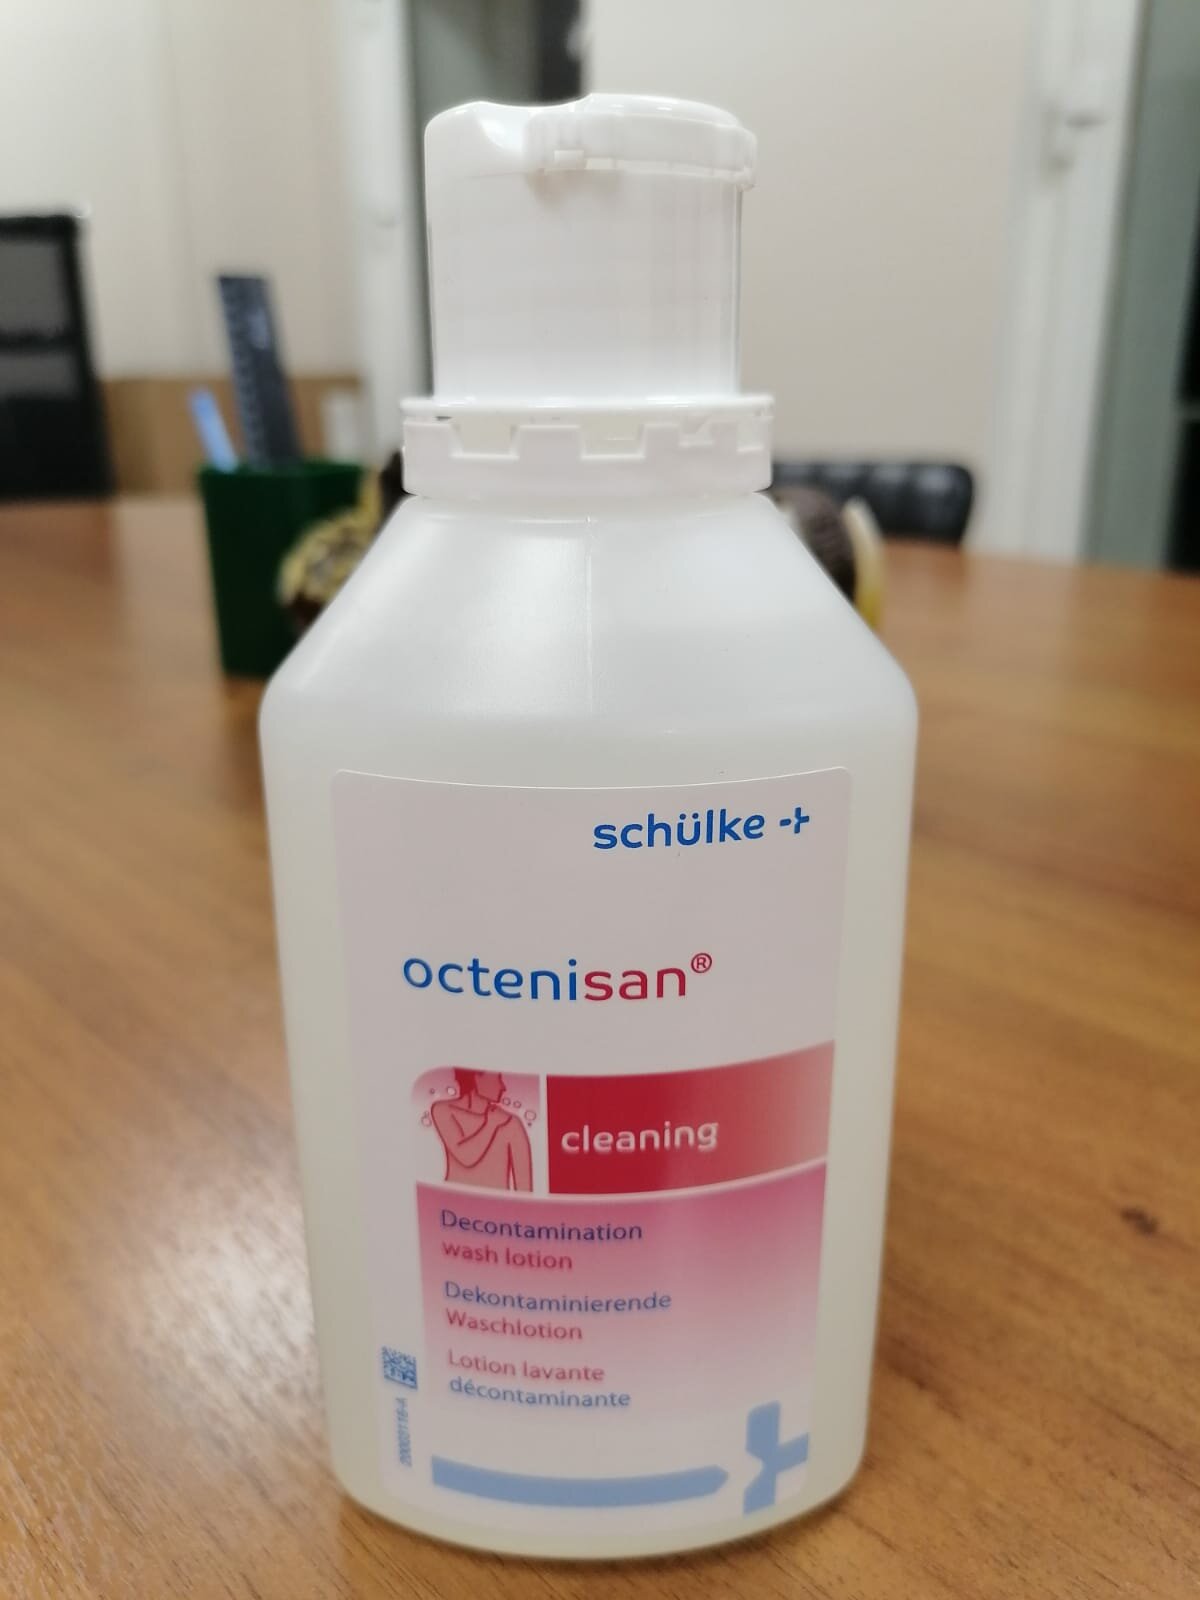 Октенисан Schulke антимикробный моющий лосьон для кожи и волос Octenisan антисептик.